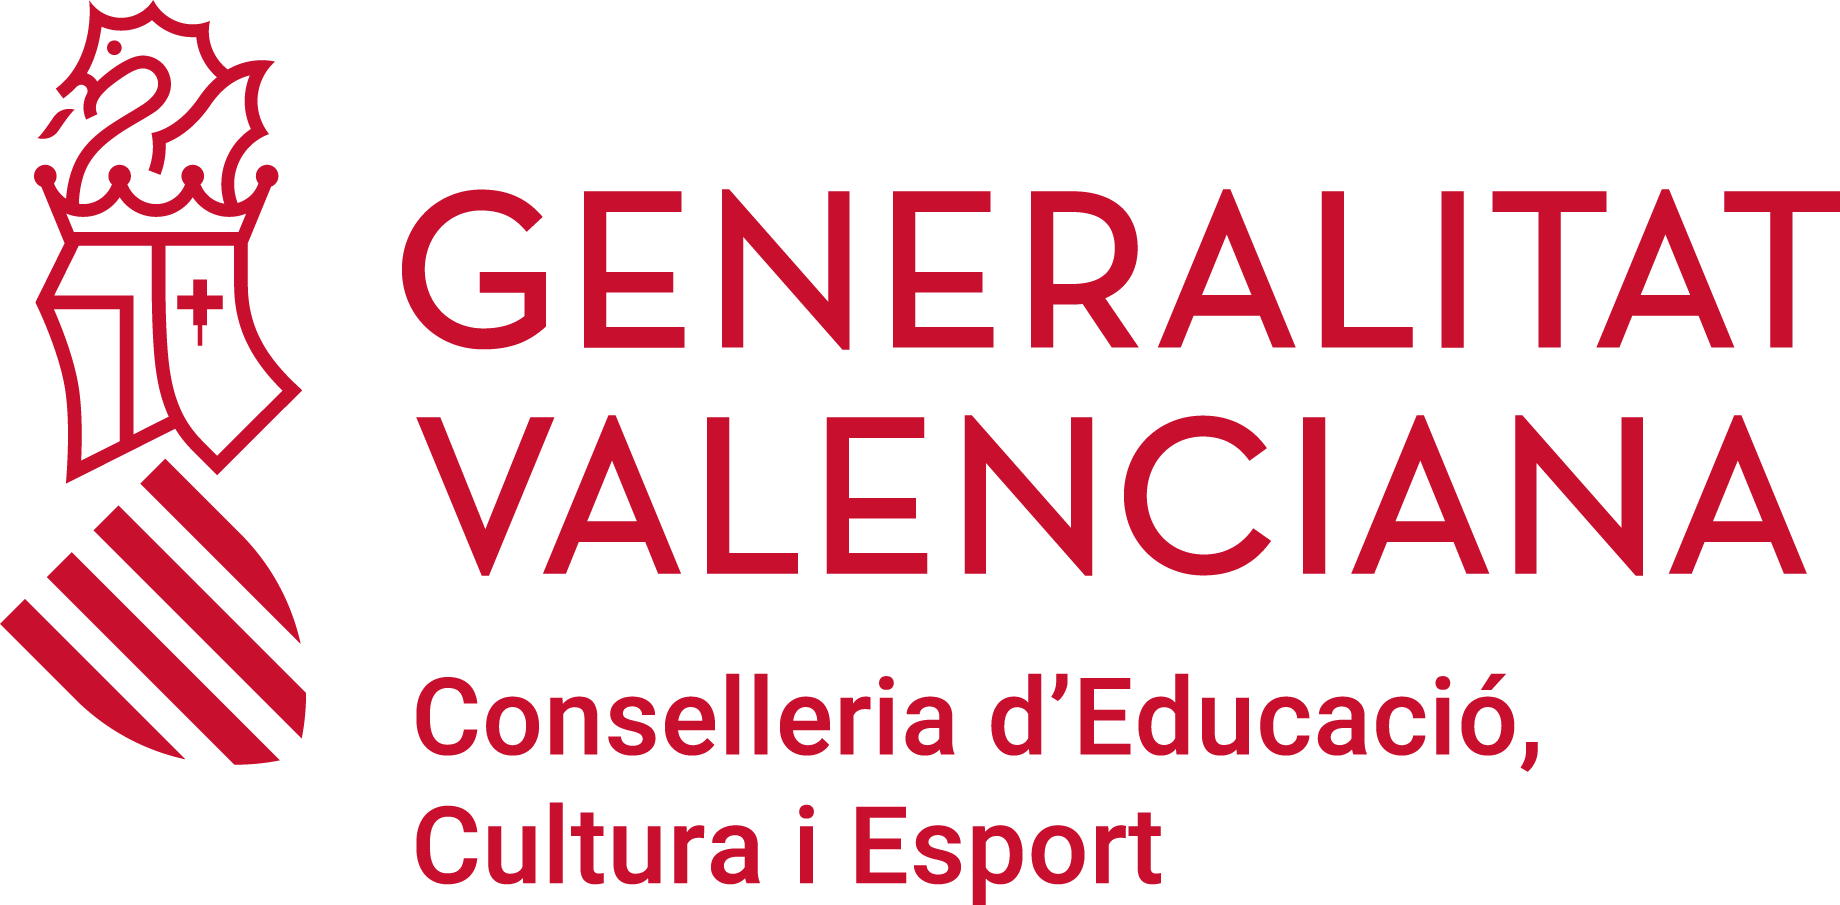 http://www.ceice.gva.es/documents/162777557/166469798/gv_conselleria_educacio_rgb_val.png/